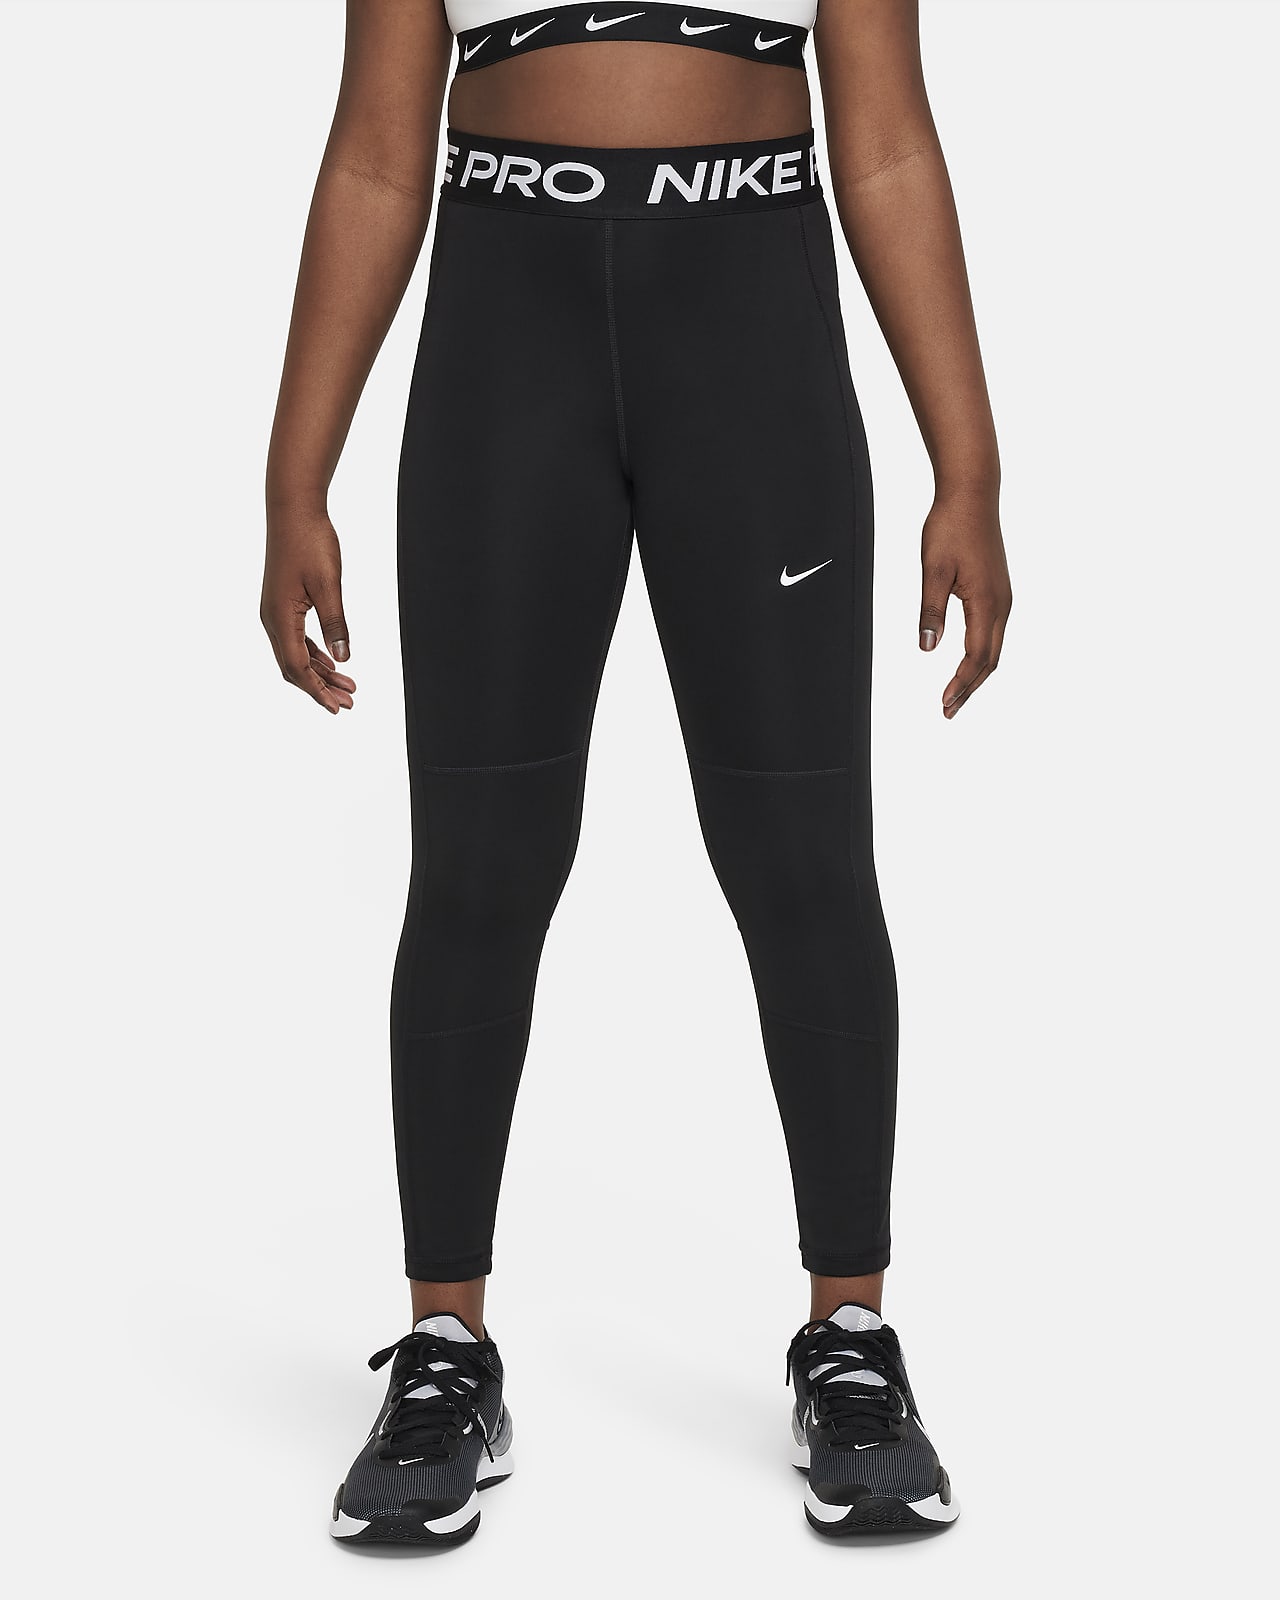 Nike Logo Iron On -  Ireland